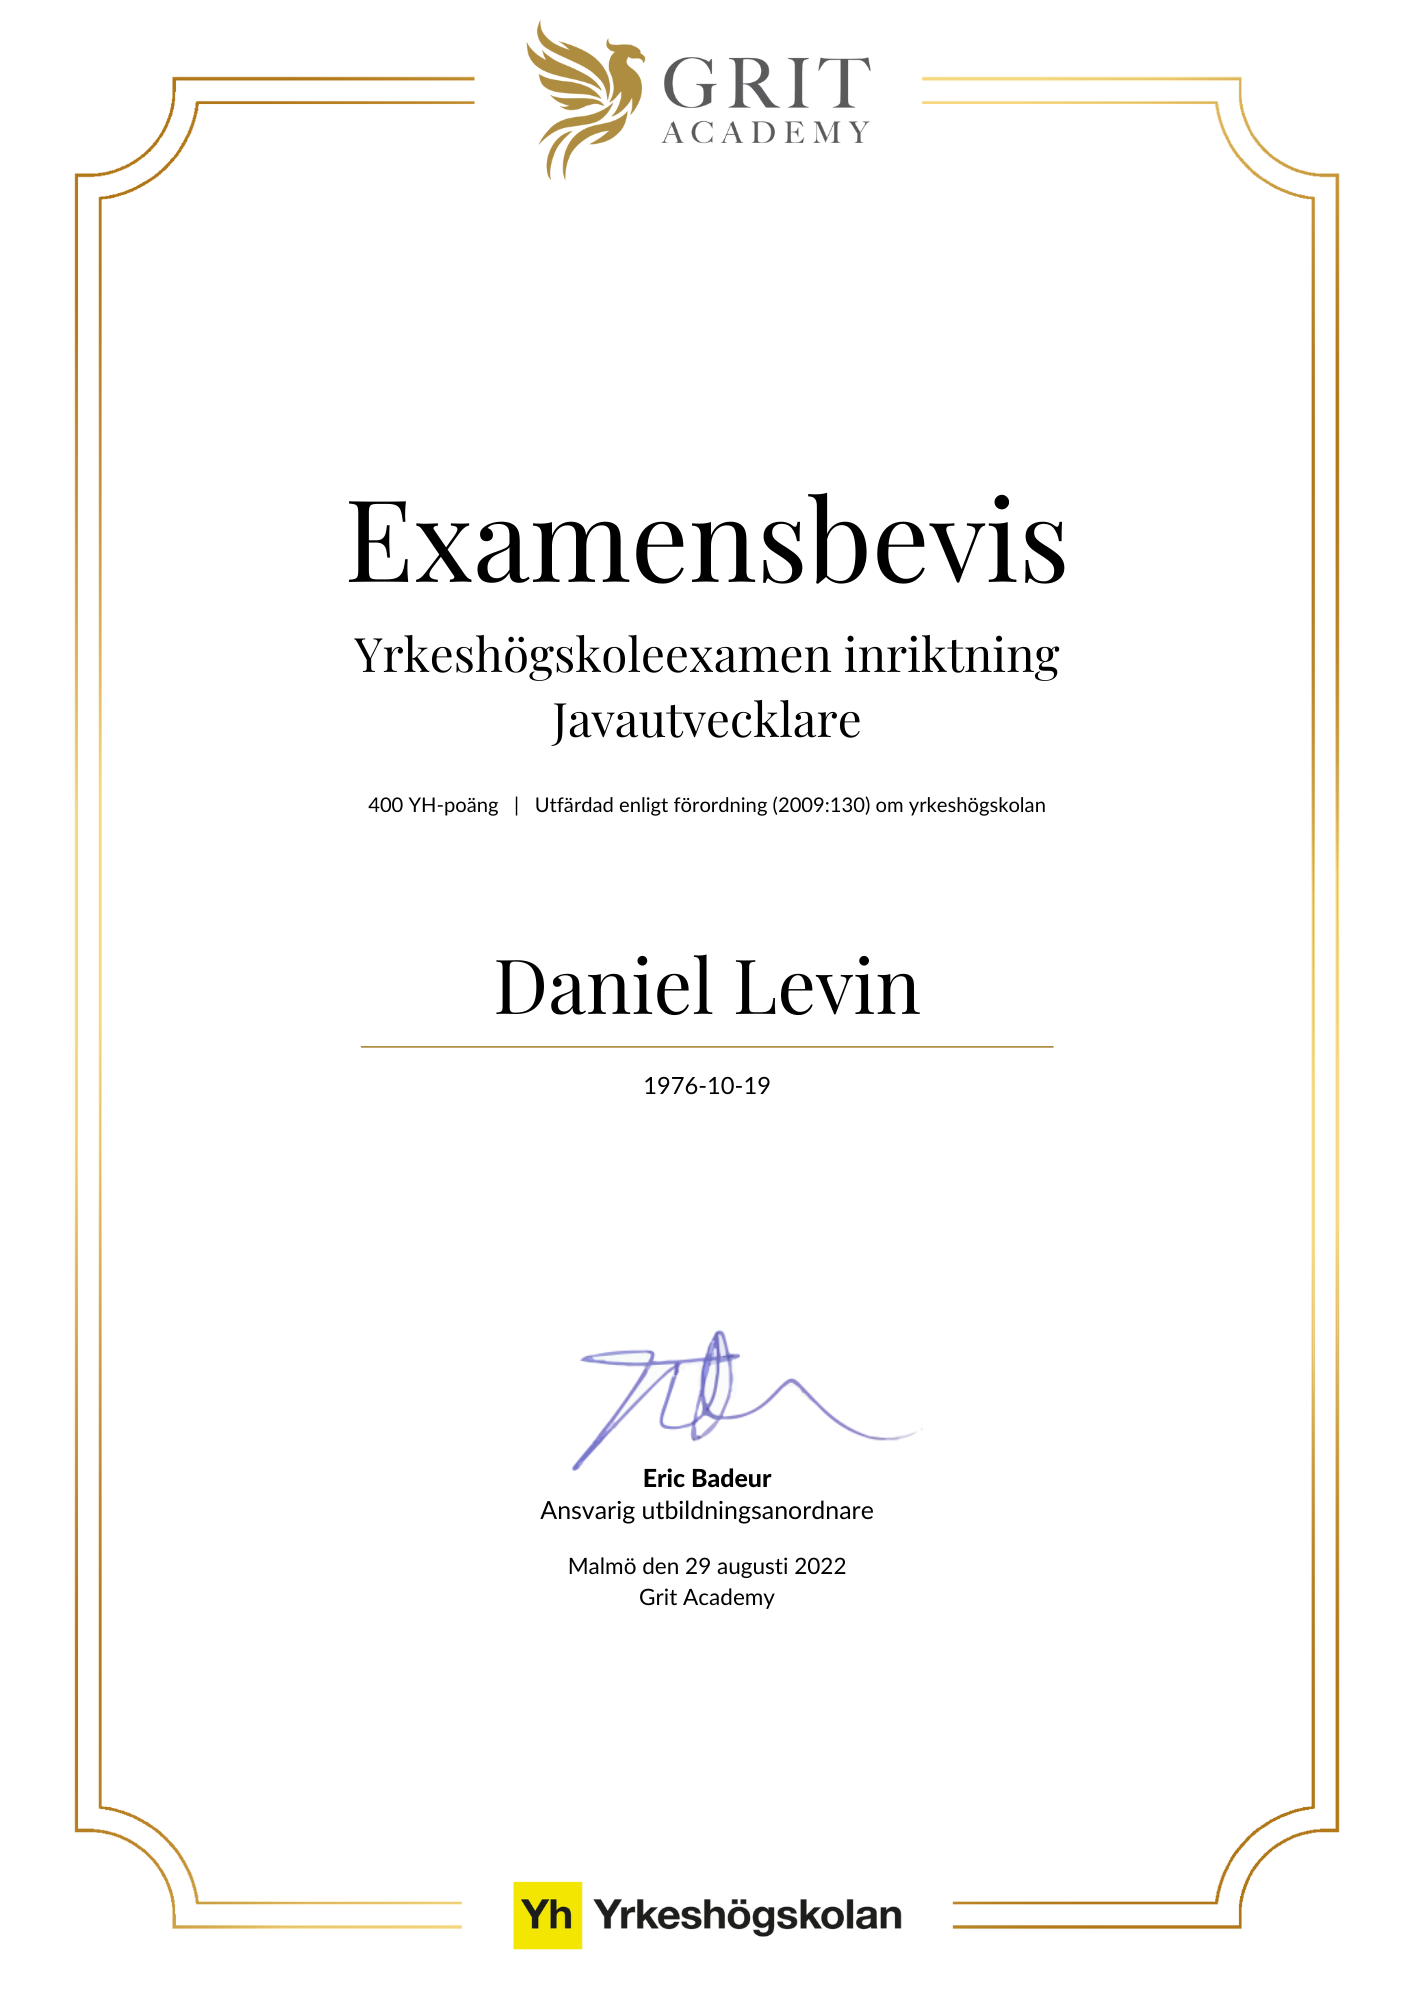 Examensbevis Daniel Levin - 1